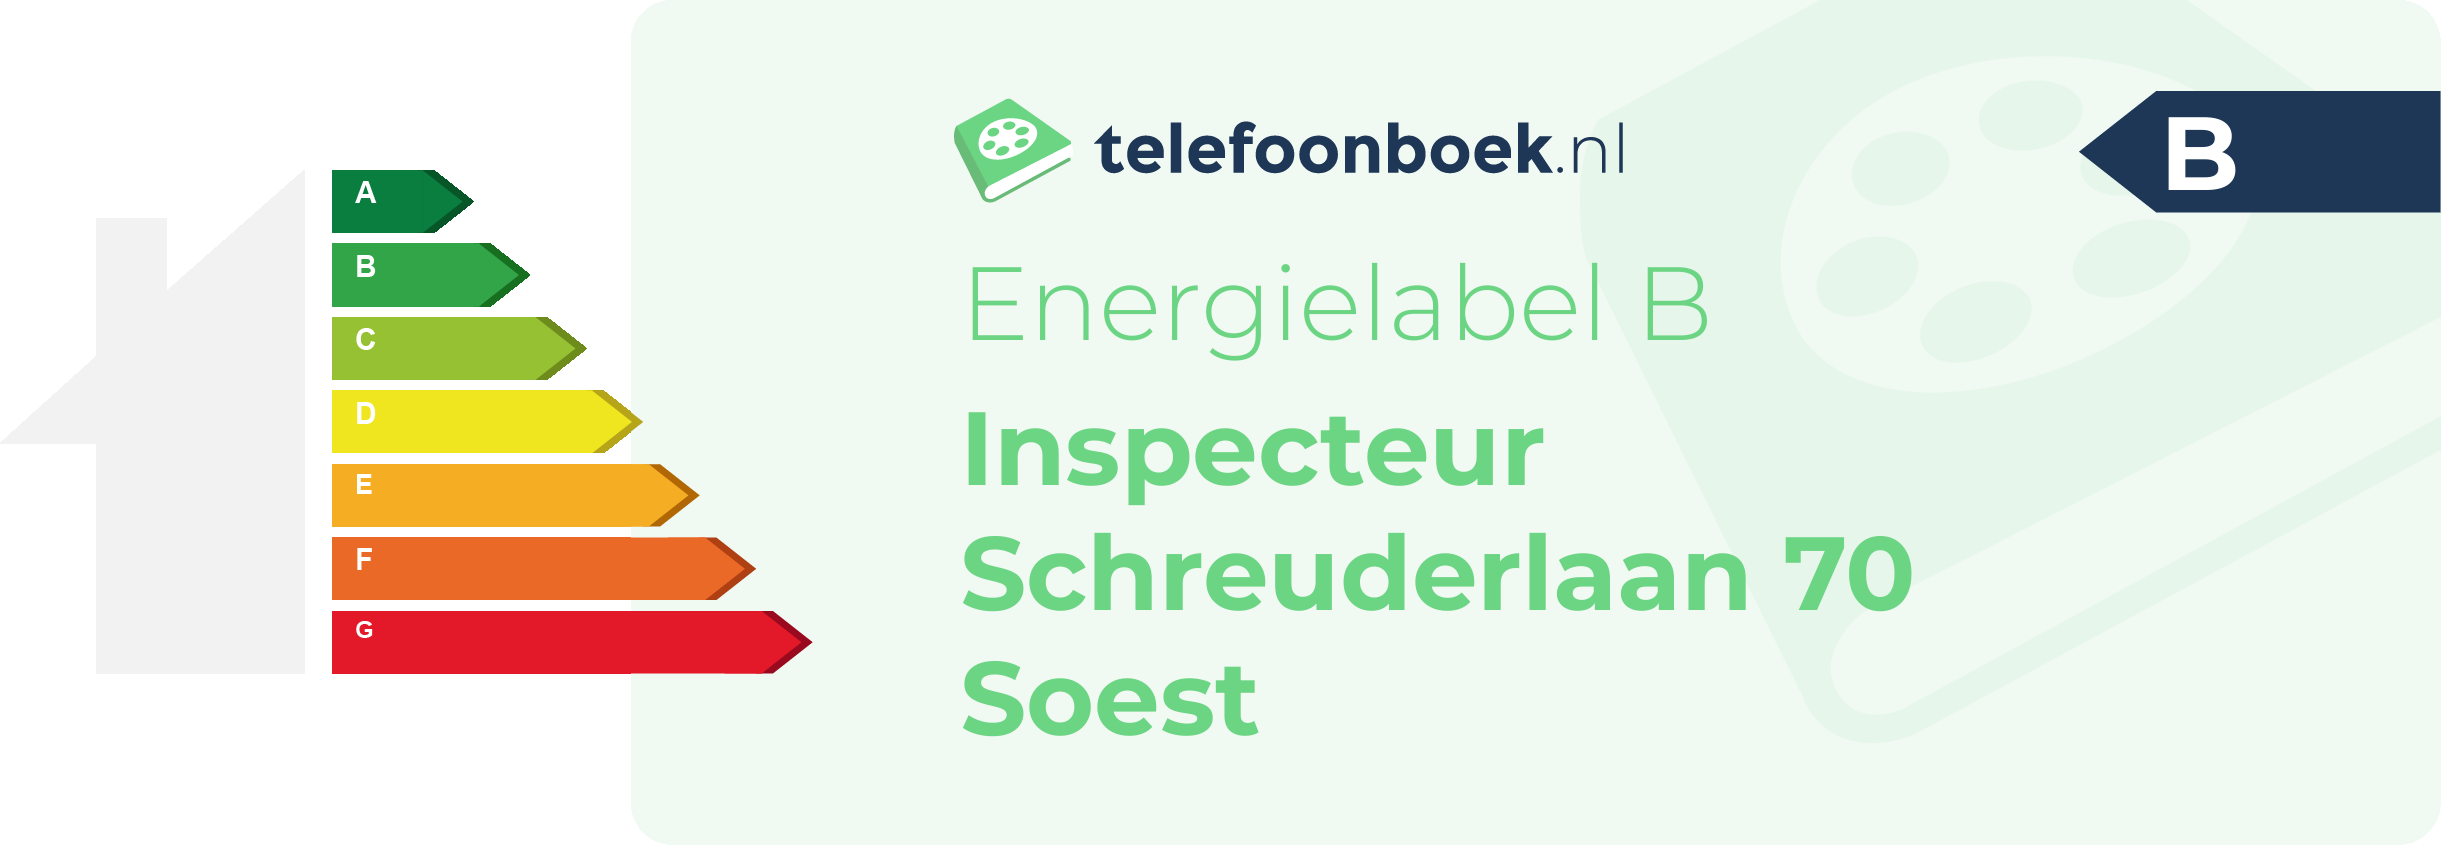 Energielabel Inspecteur Schreuderlaan 70 Soest